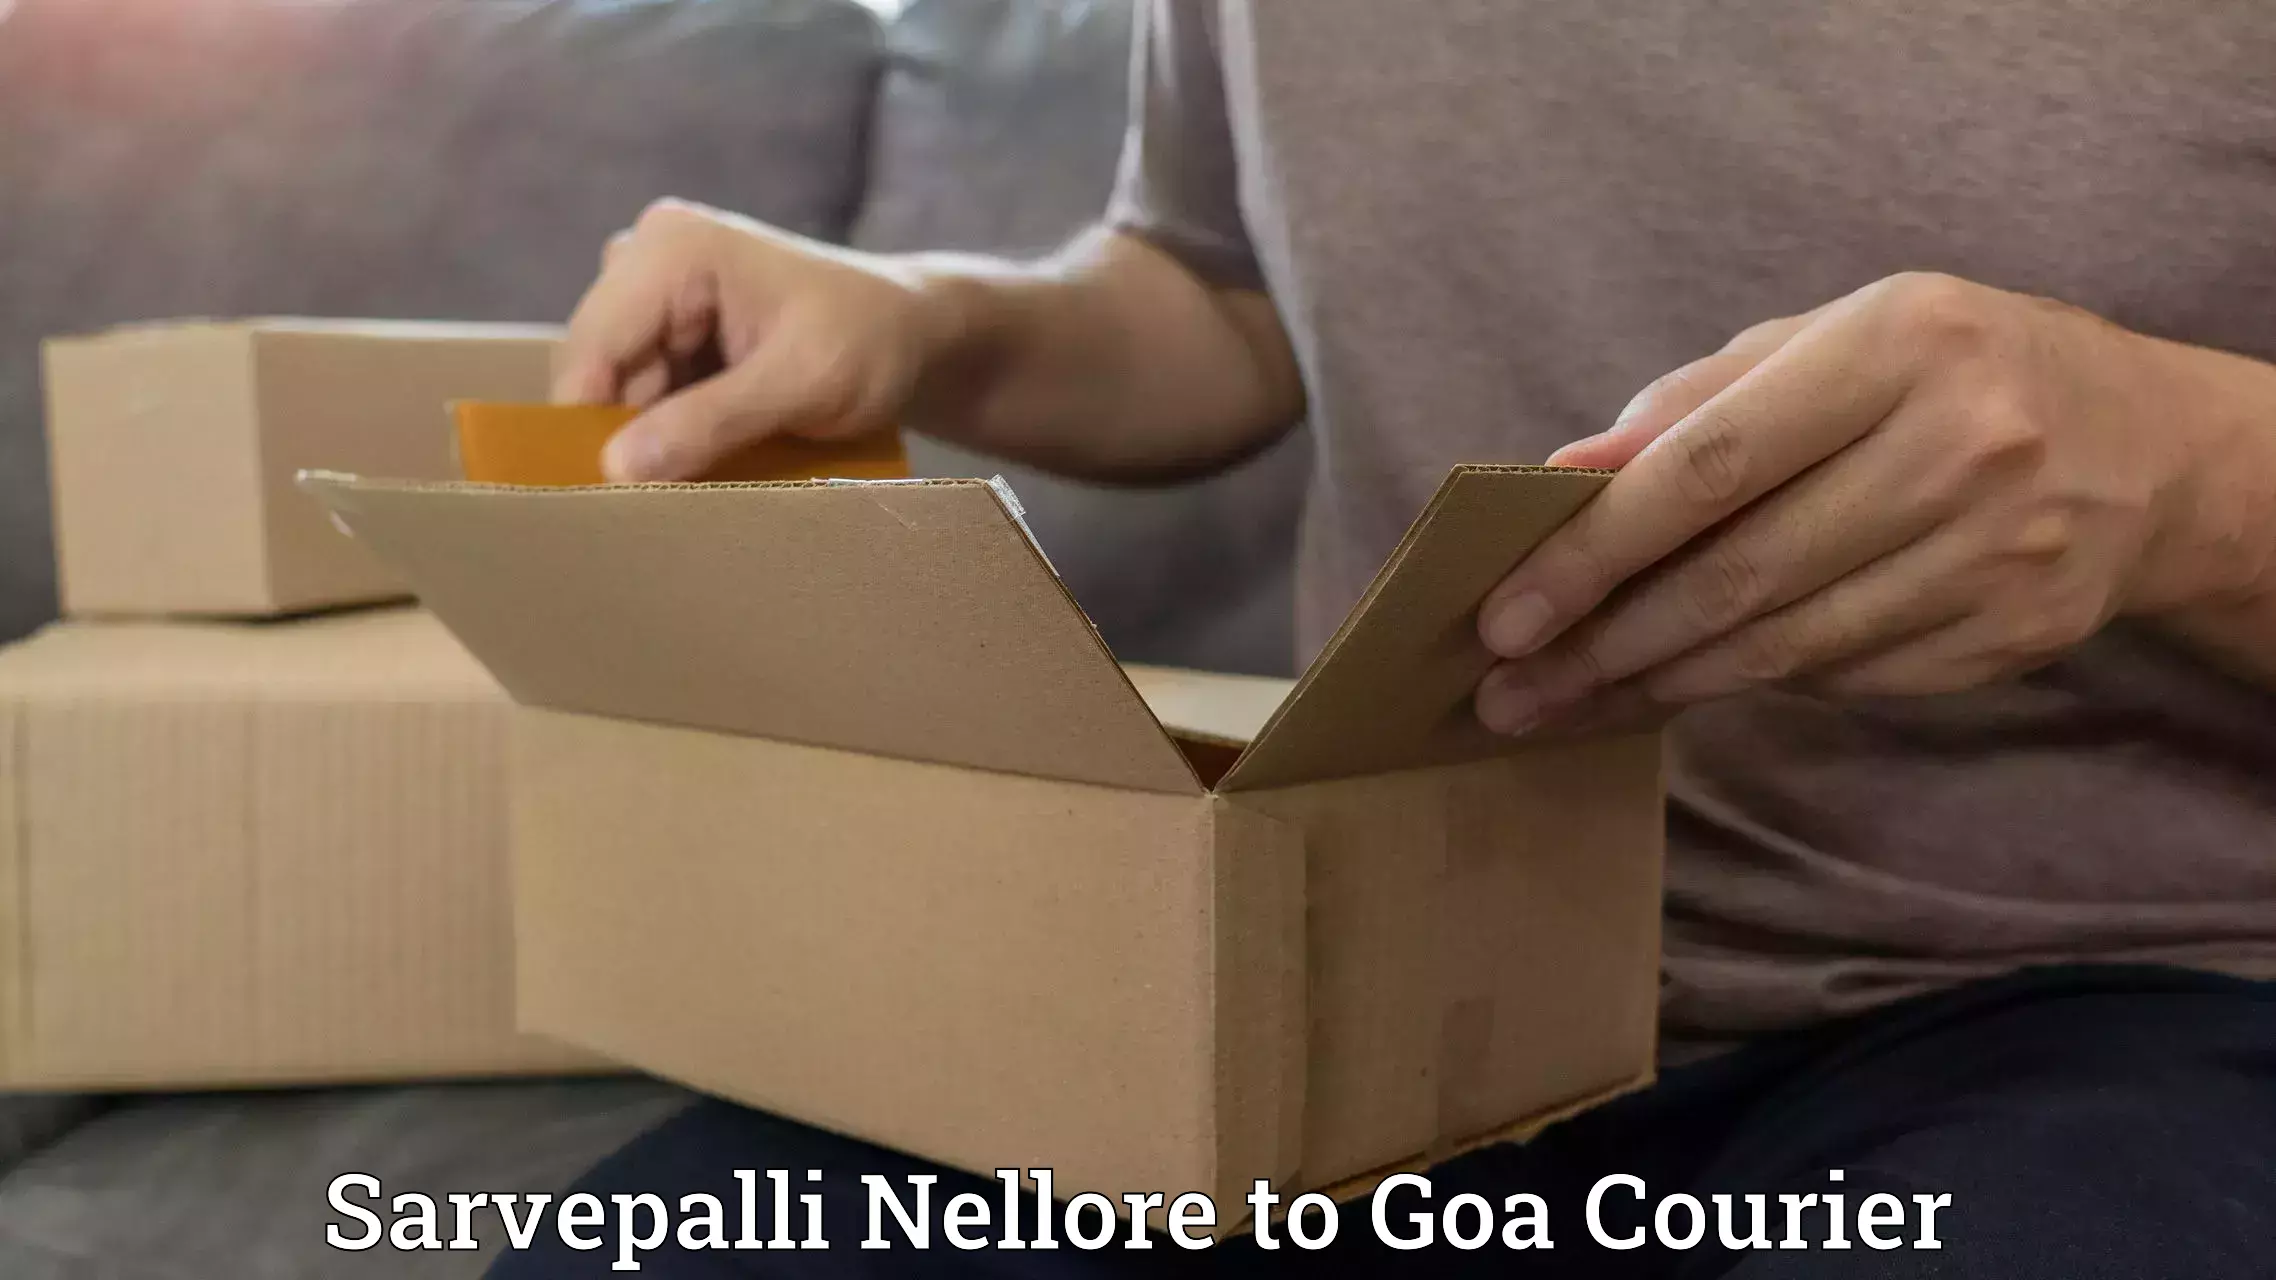 Individual parcel service Sarvepalli Nellore to Panaji